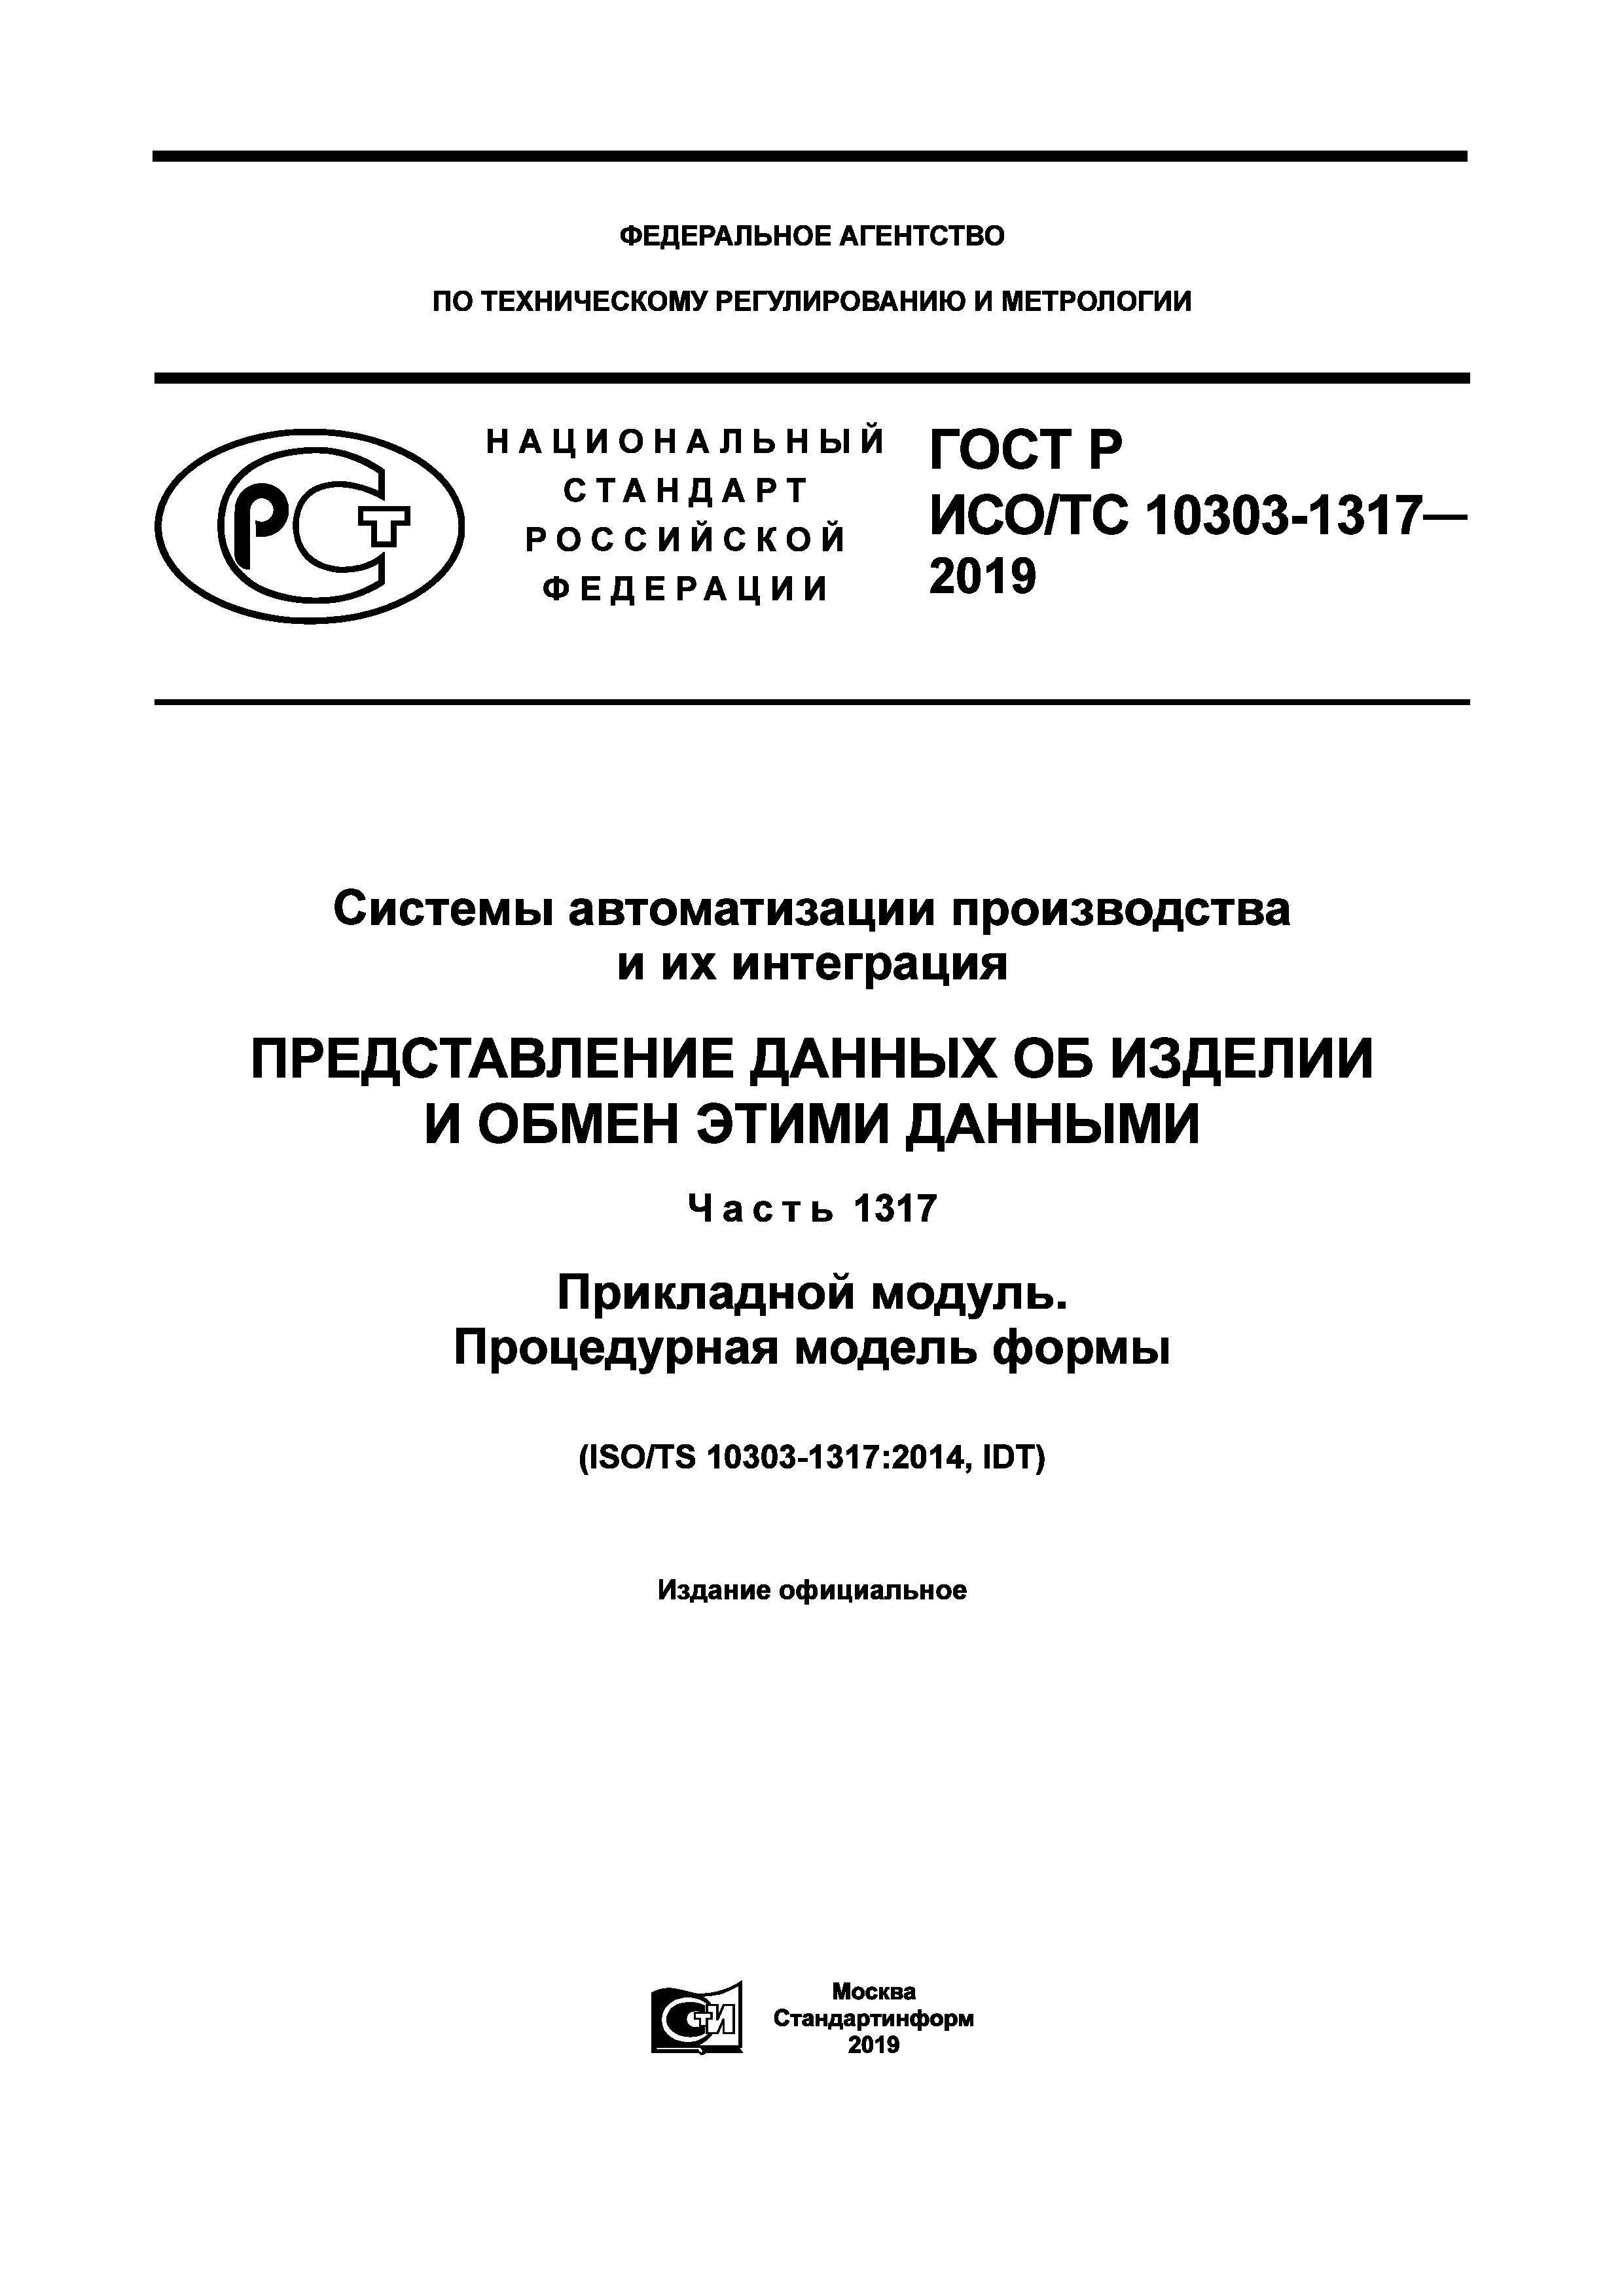 ГОСТ Р ИСО/ТС 10303-1317-2019